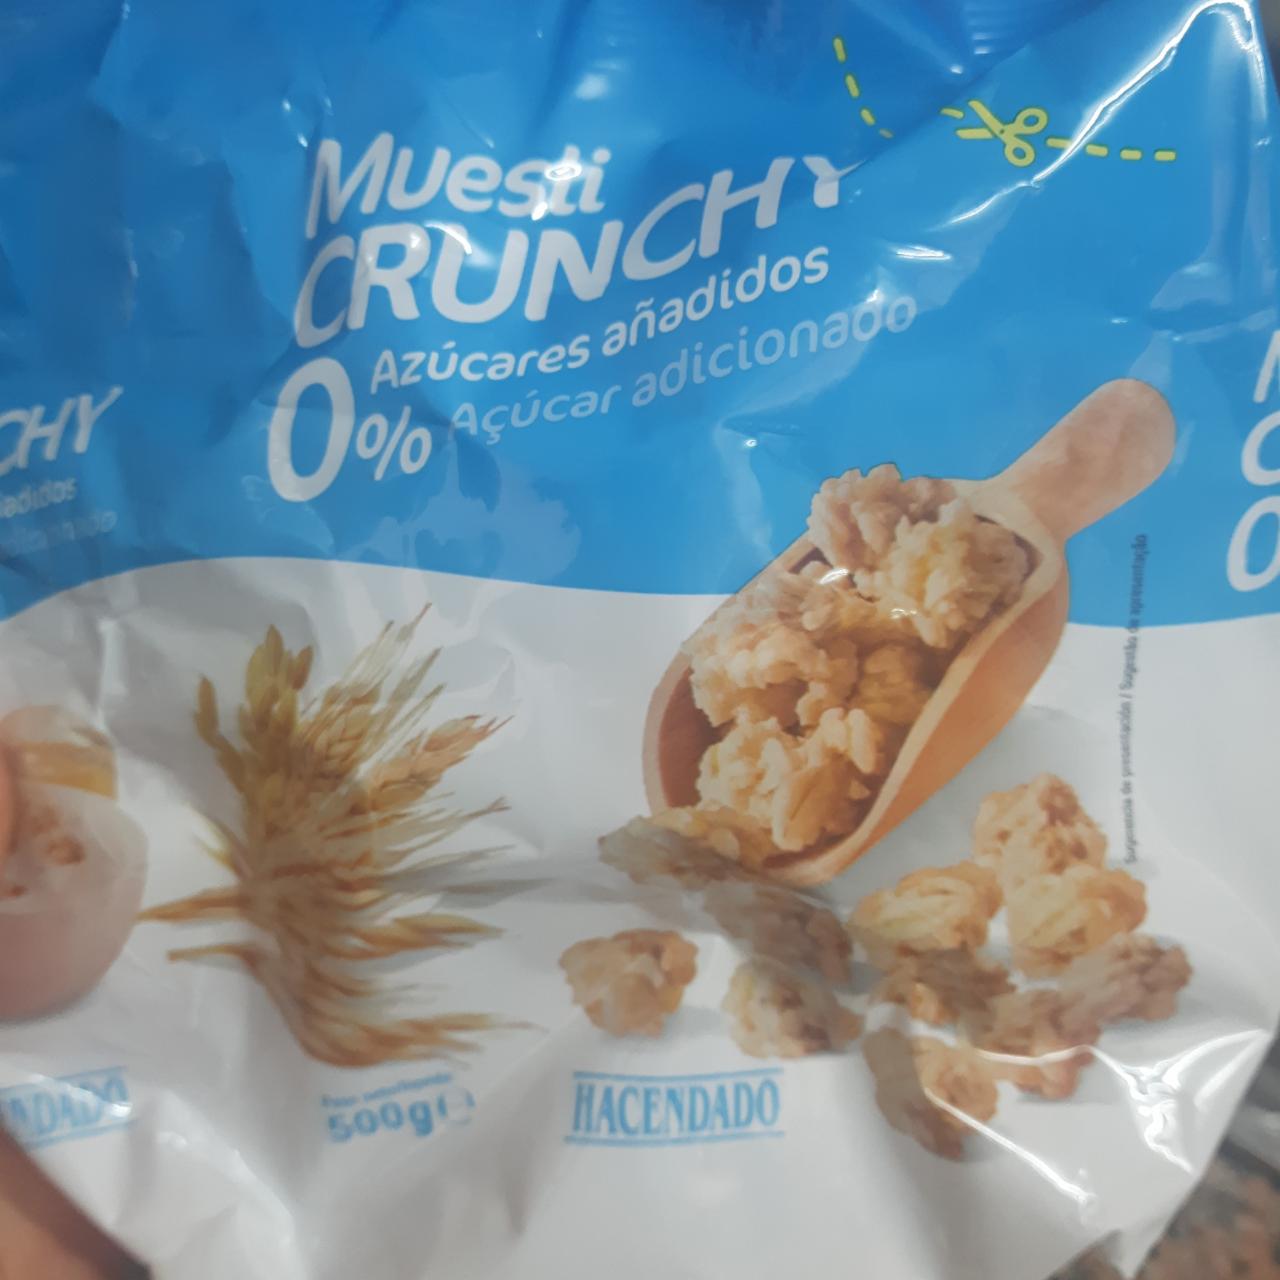 Fotografie - Muesli Crunchy 0% azúcares añadidos Hacendado